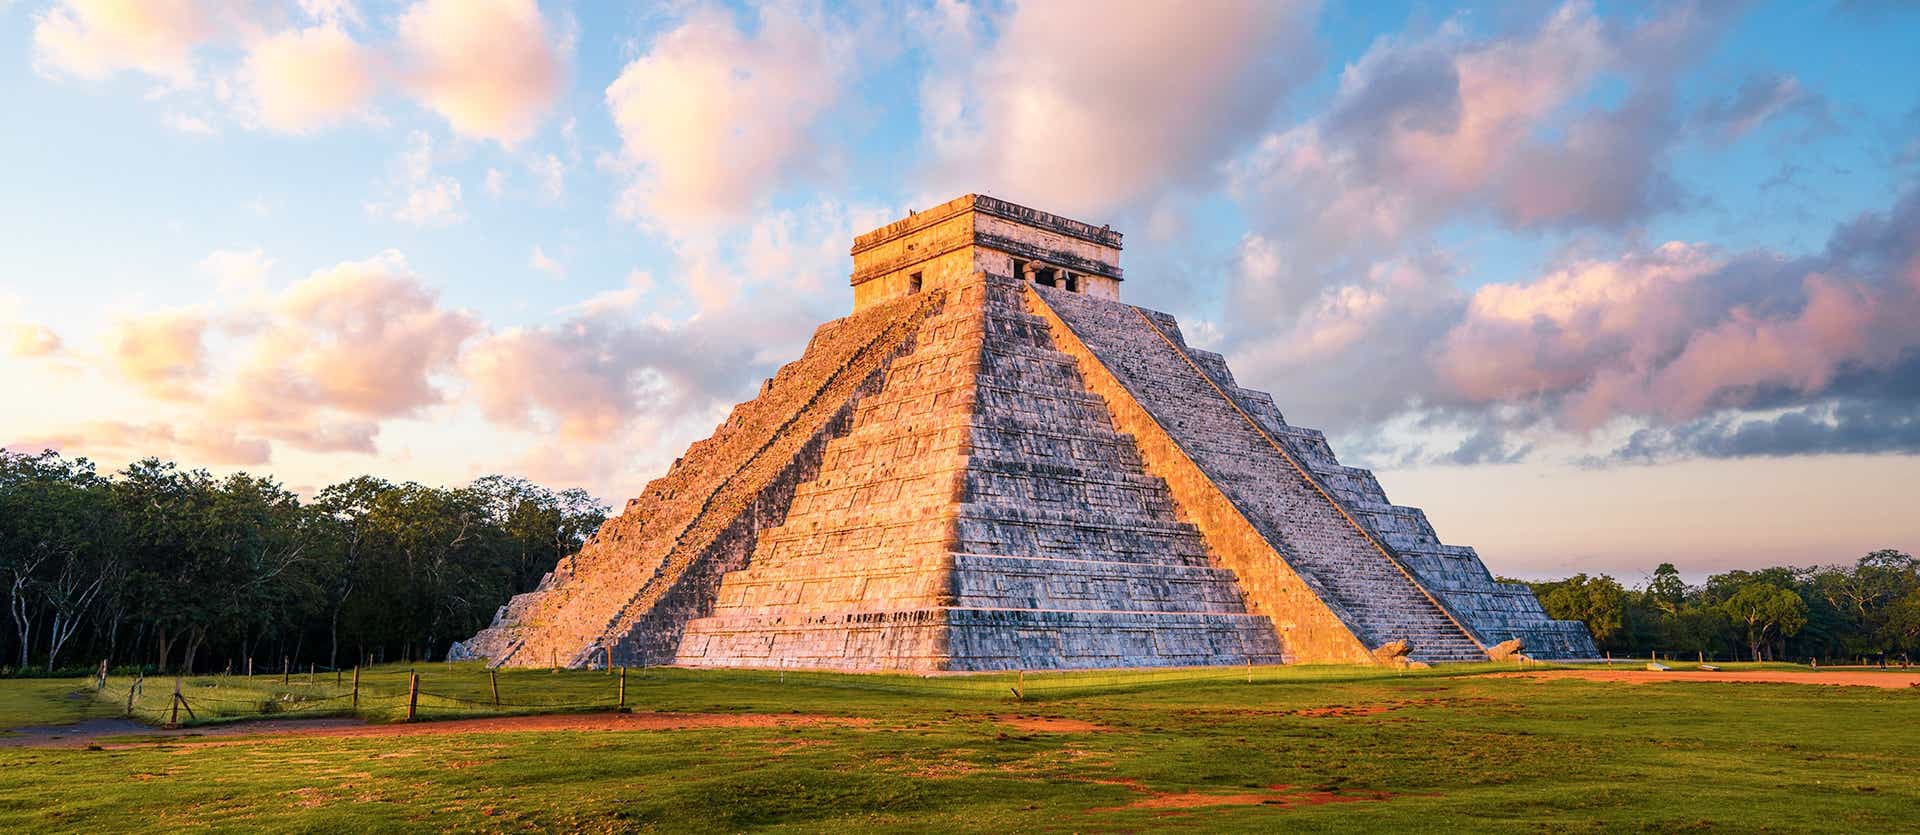 Pyramide des Kukulcán <span class="iconos separador"></span> Chichén Itzá